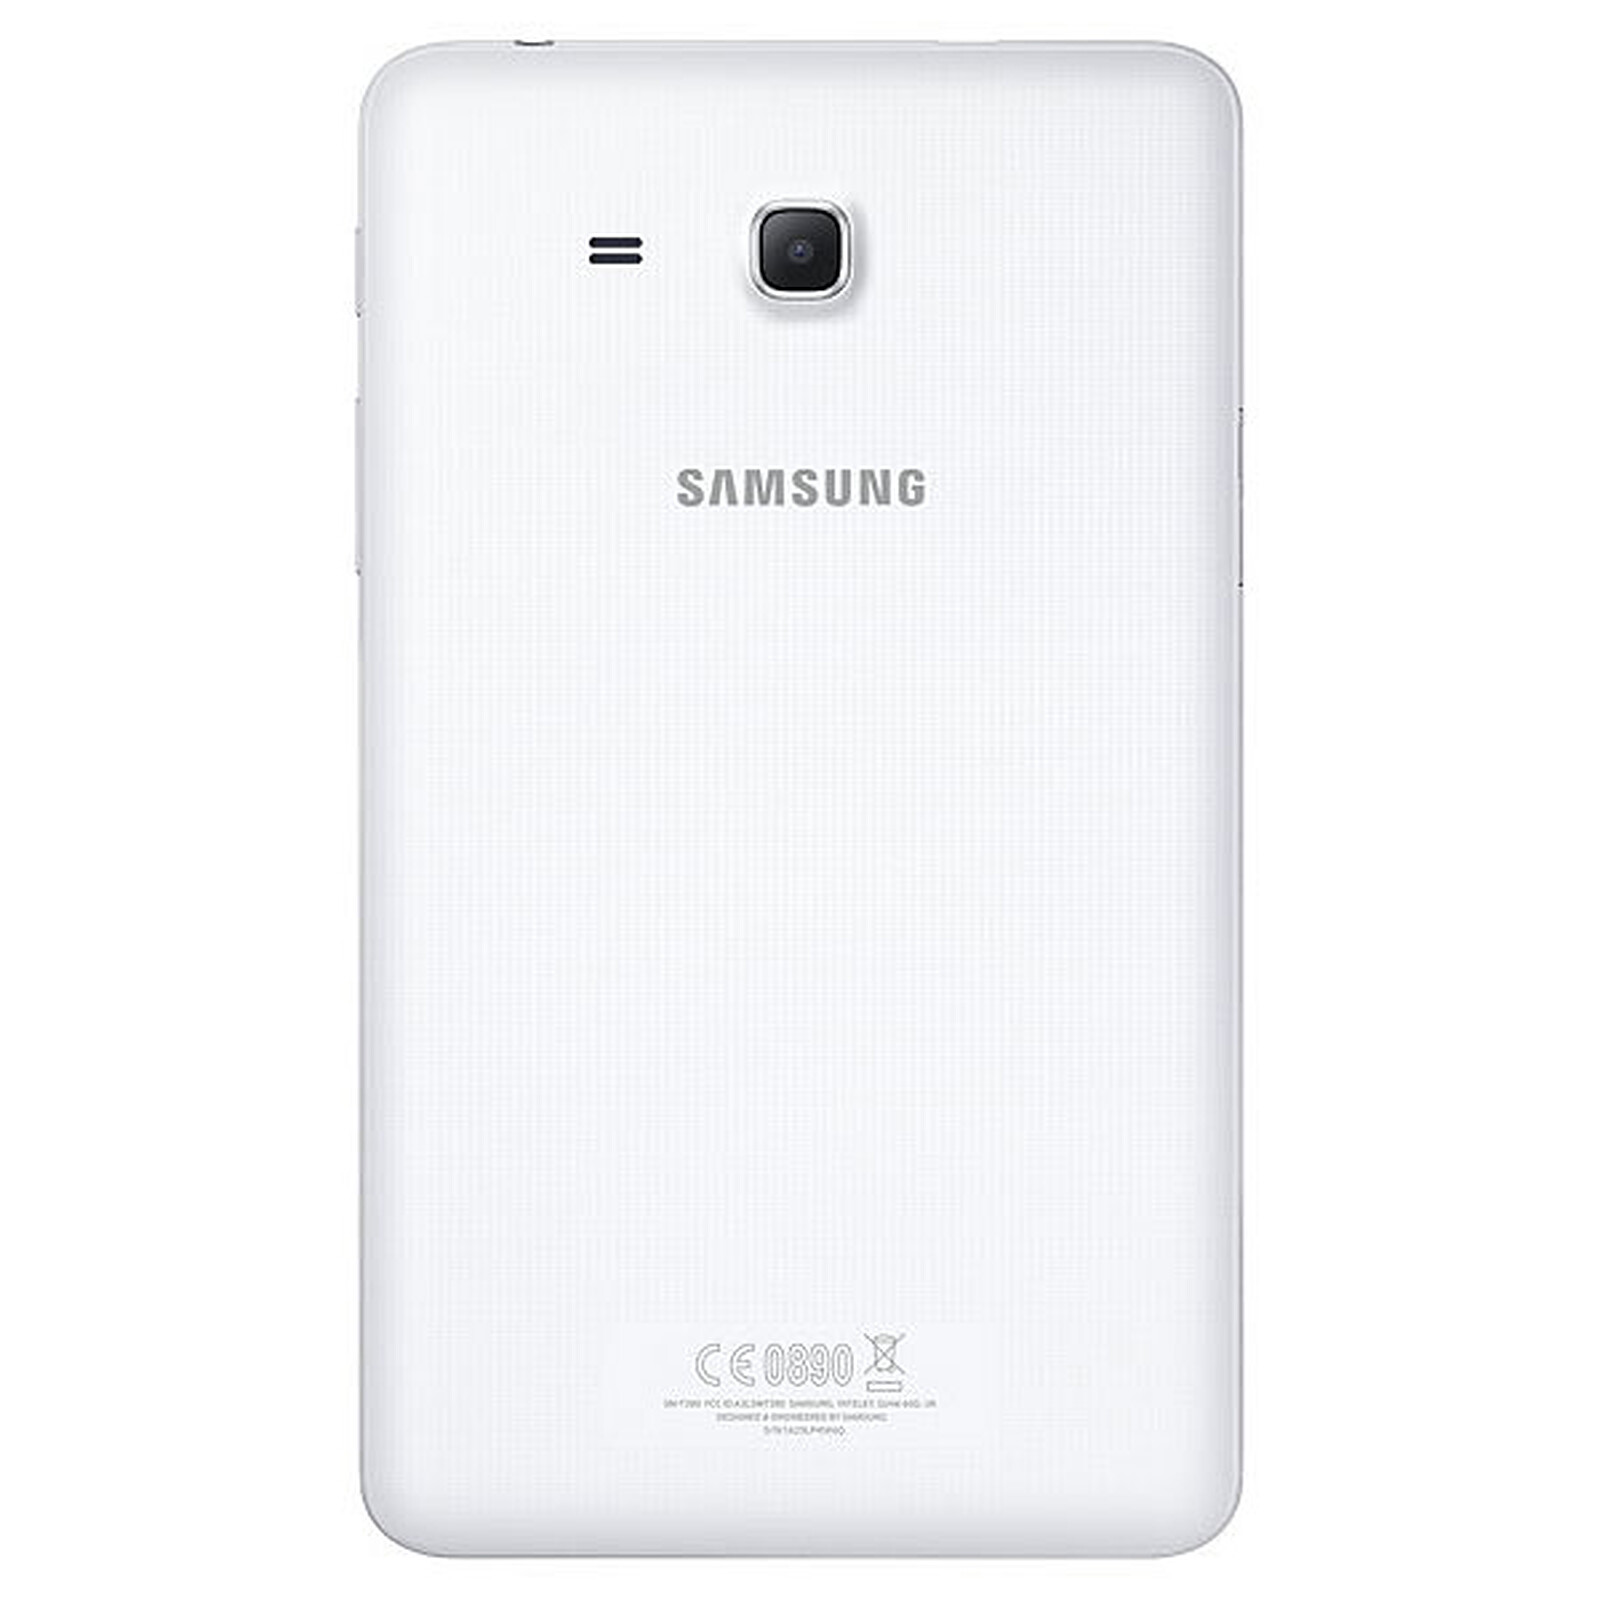 Samsung Galaxy A20e : un smartphone compact de 5,8 pouces à seulement 159 €